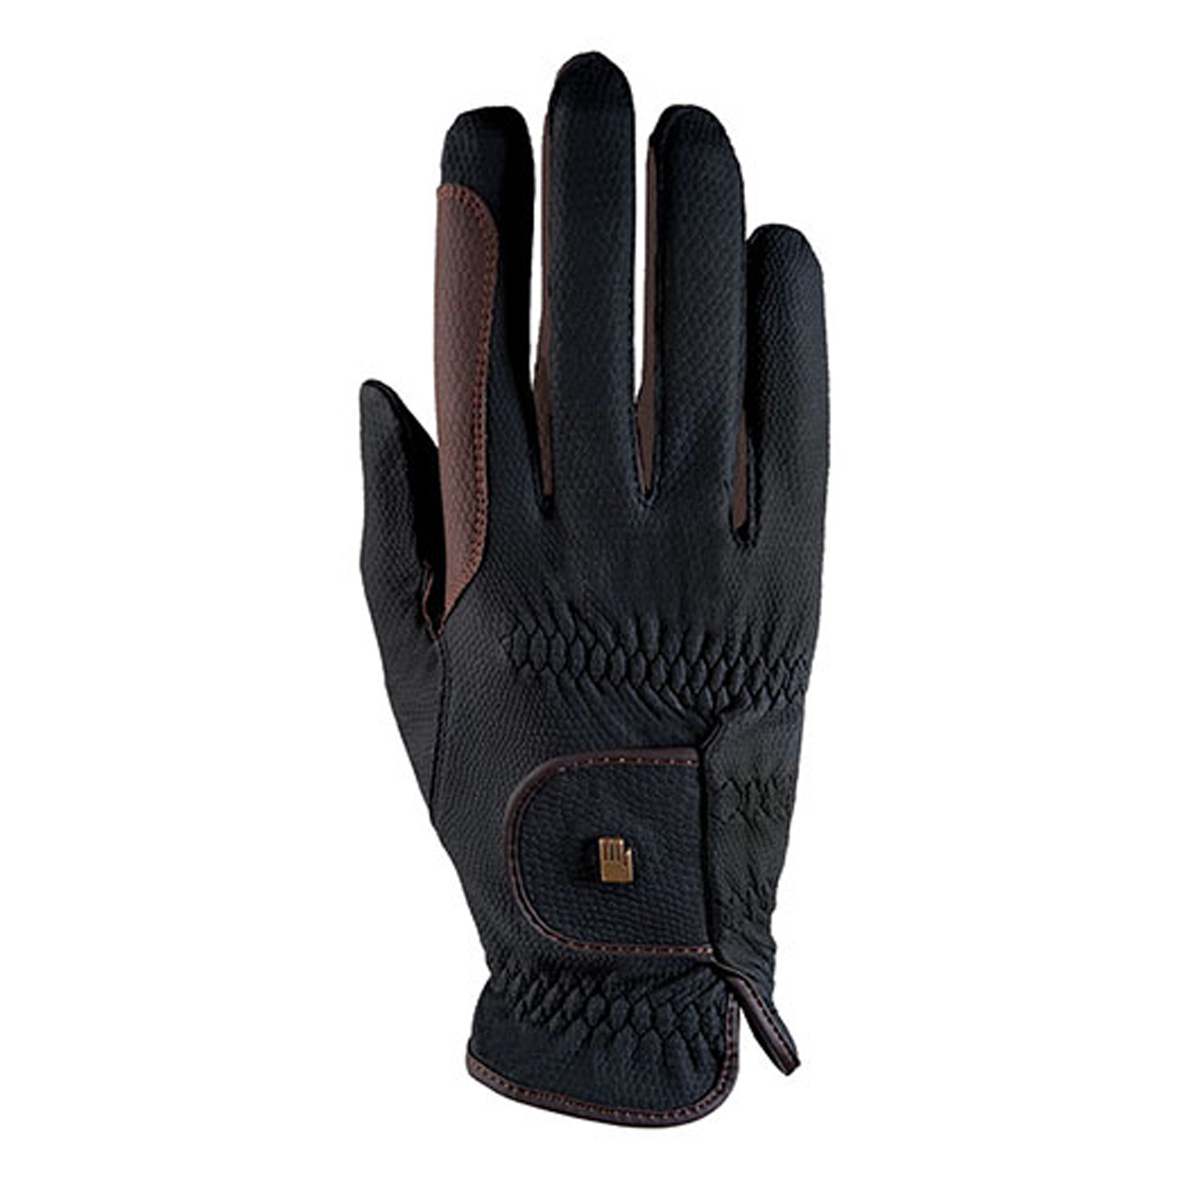 Handschoenen Roeckl Malta Bicolor Grip, 7 in black/brown